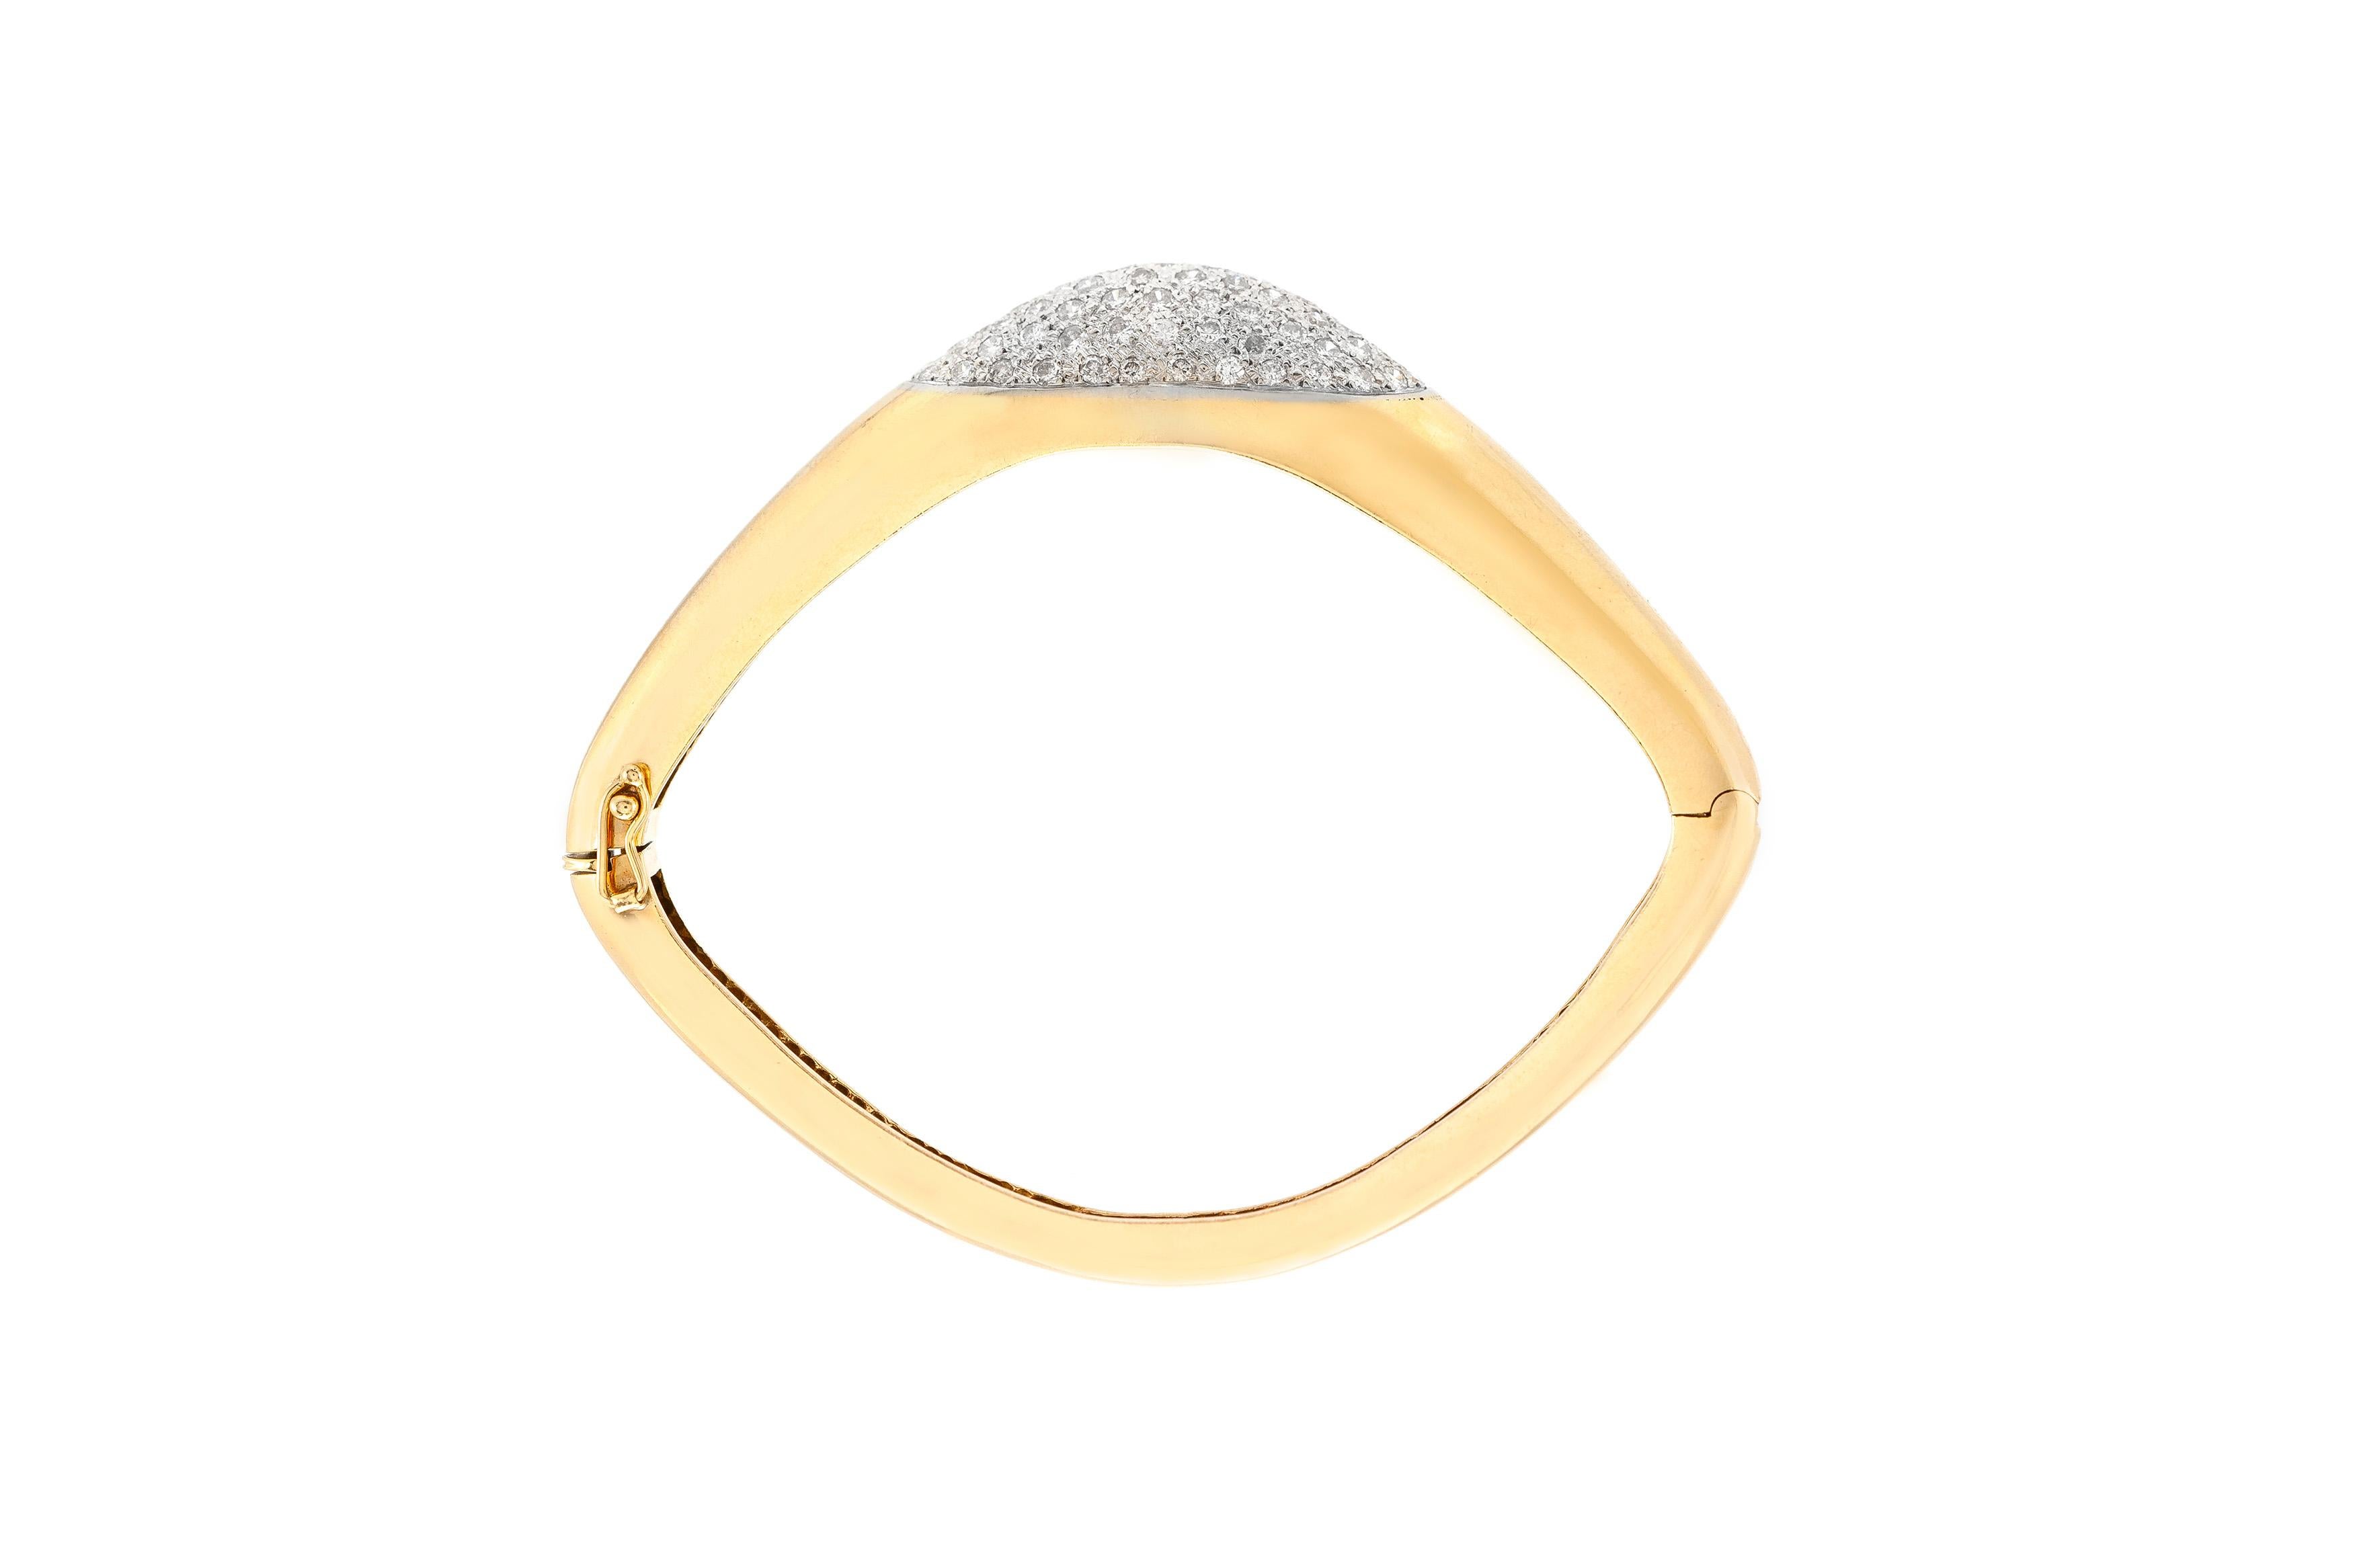 Das Armband ist fein in 14k Gelbgold mit Diamanten mit einem Gesamtgewicht von etwa 3,95 Karat gefertigt.